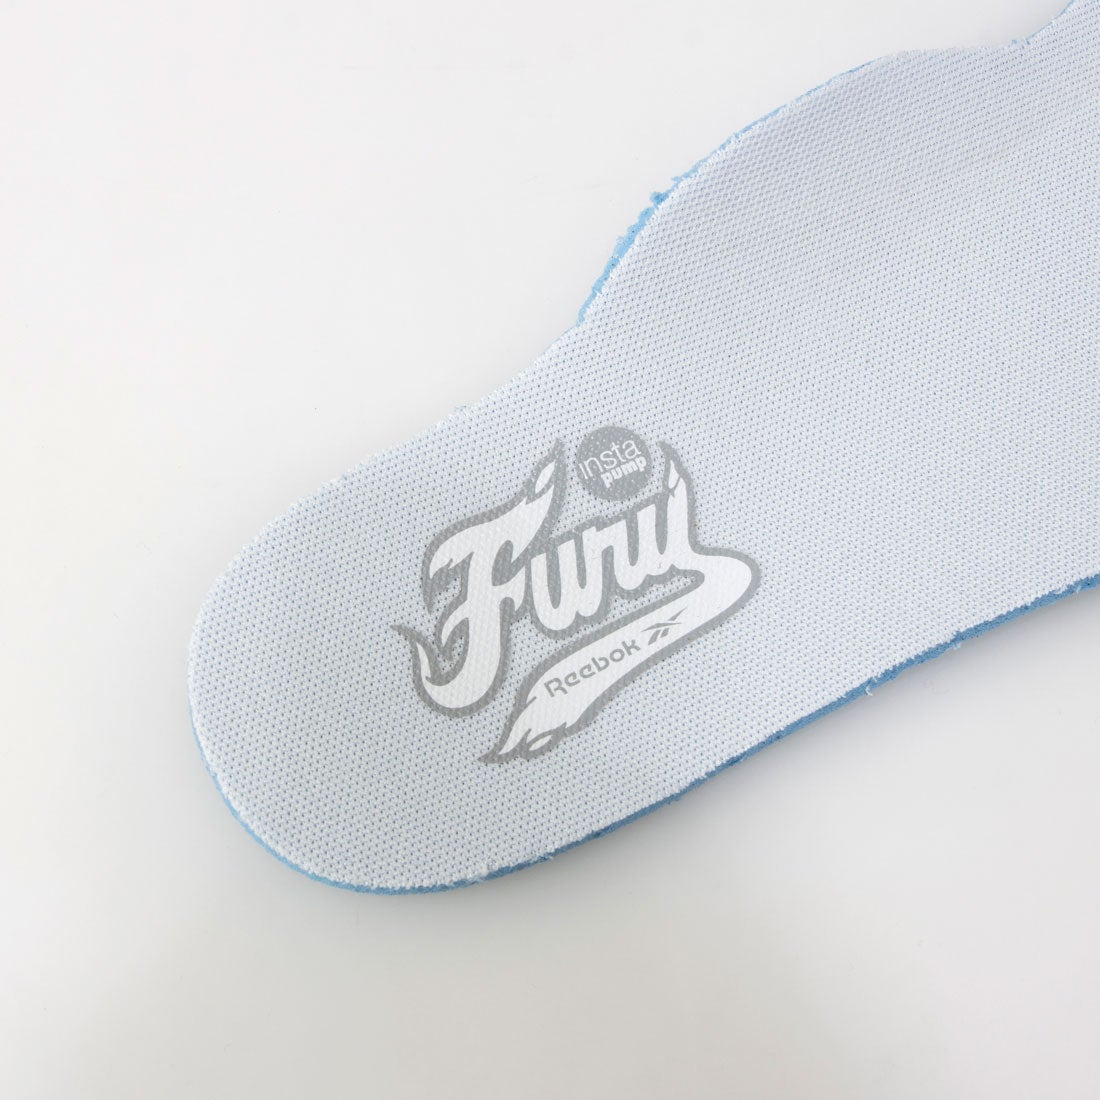 インスタポンプフューリー ナイロン / Instapump Fury Nylon Shoes